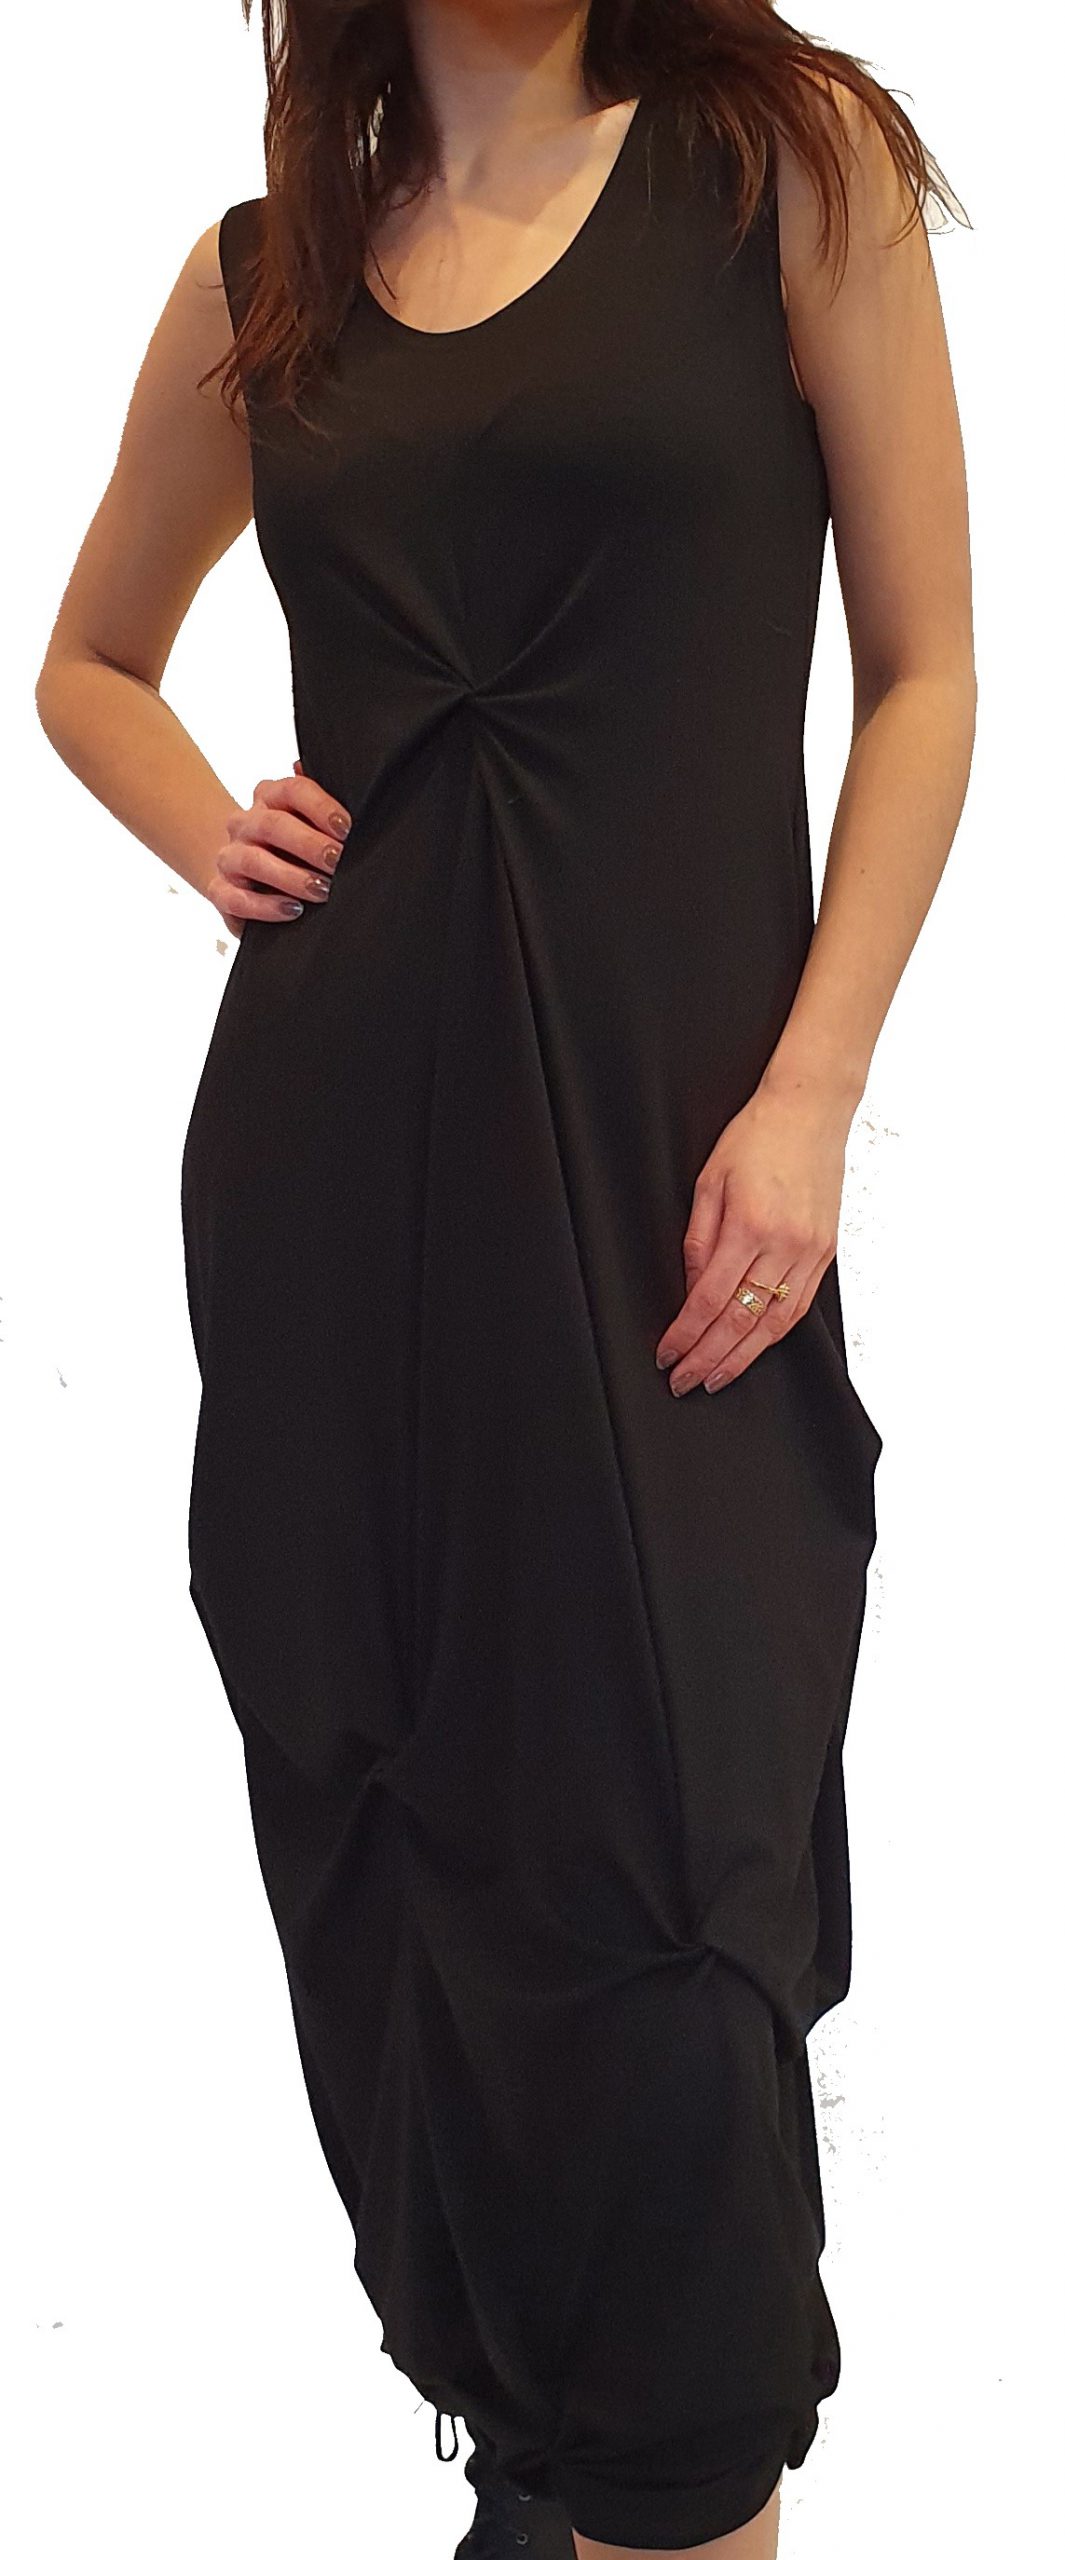 Behoren Ruim schudden Model "Mika" is een fantastische nieuwe jurk in iedere gewenste kleur! -  SJÀZZ Design